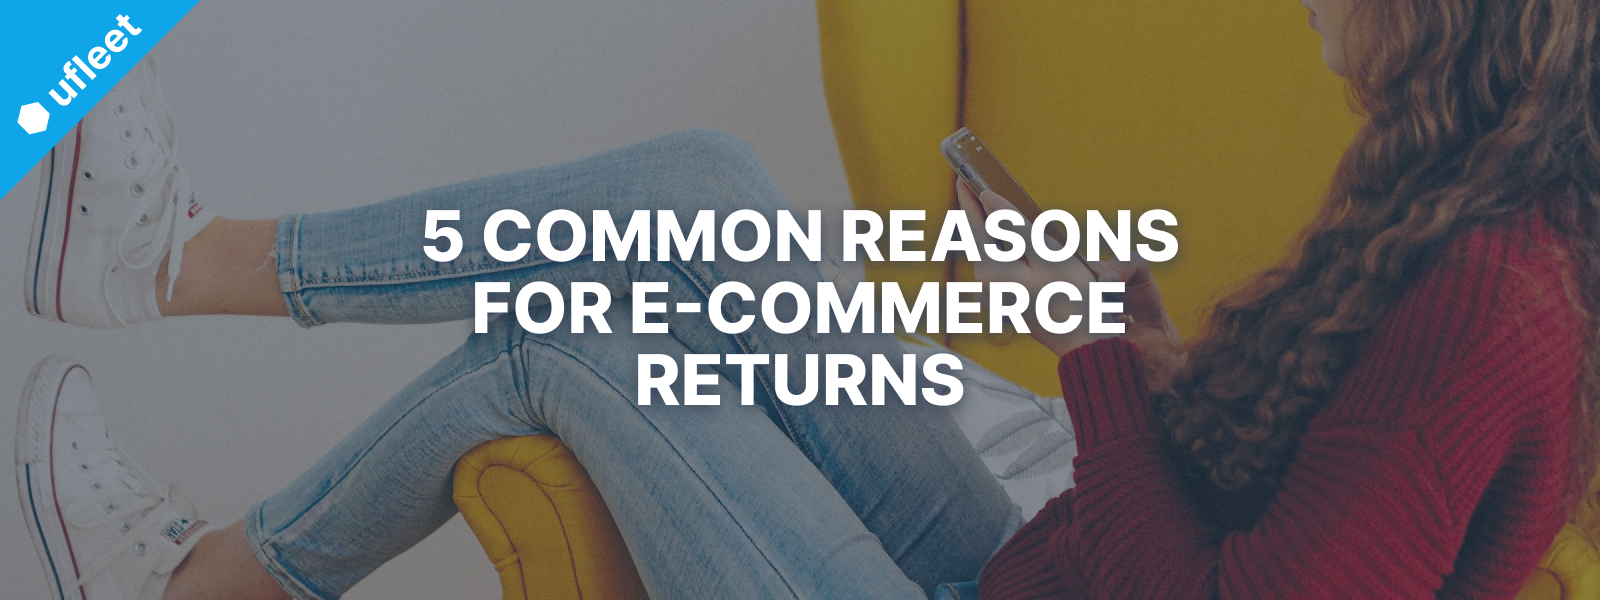 reasons for e-commerce returns